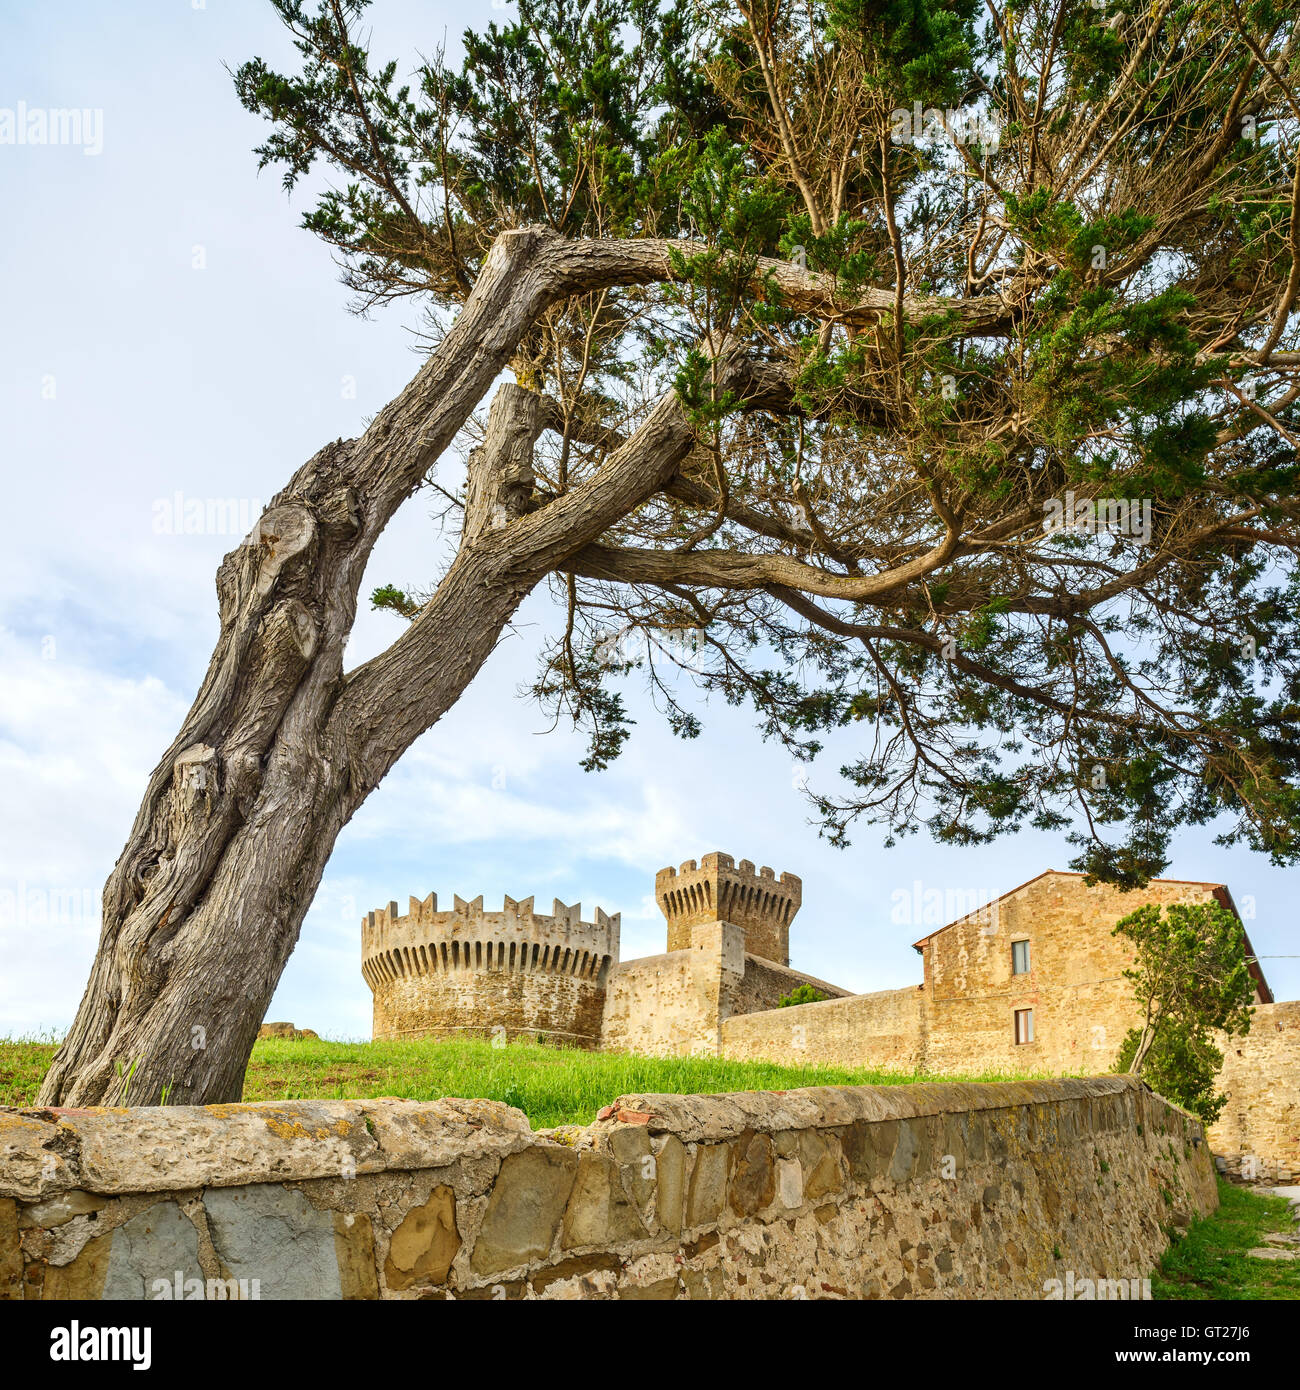 Albero di pino a Populonia villaggio medievale landmark, le mura della città e fort torre sul background. Toscana, Italia. Foto Stock